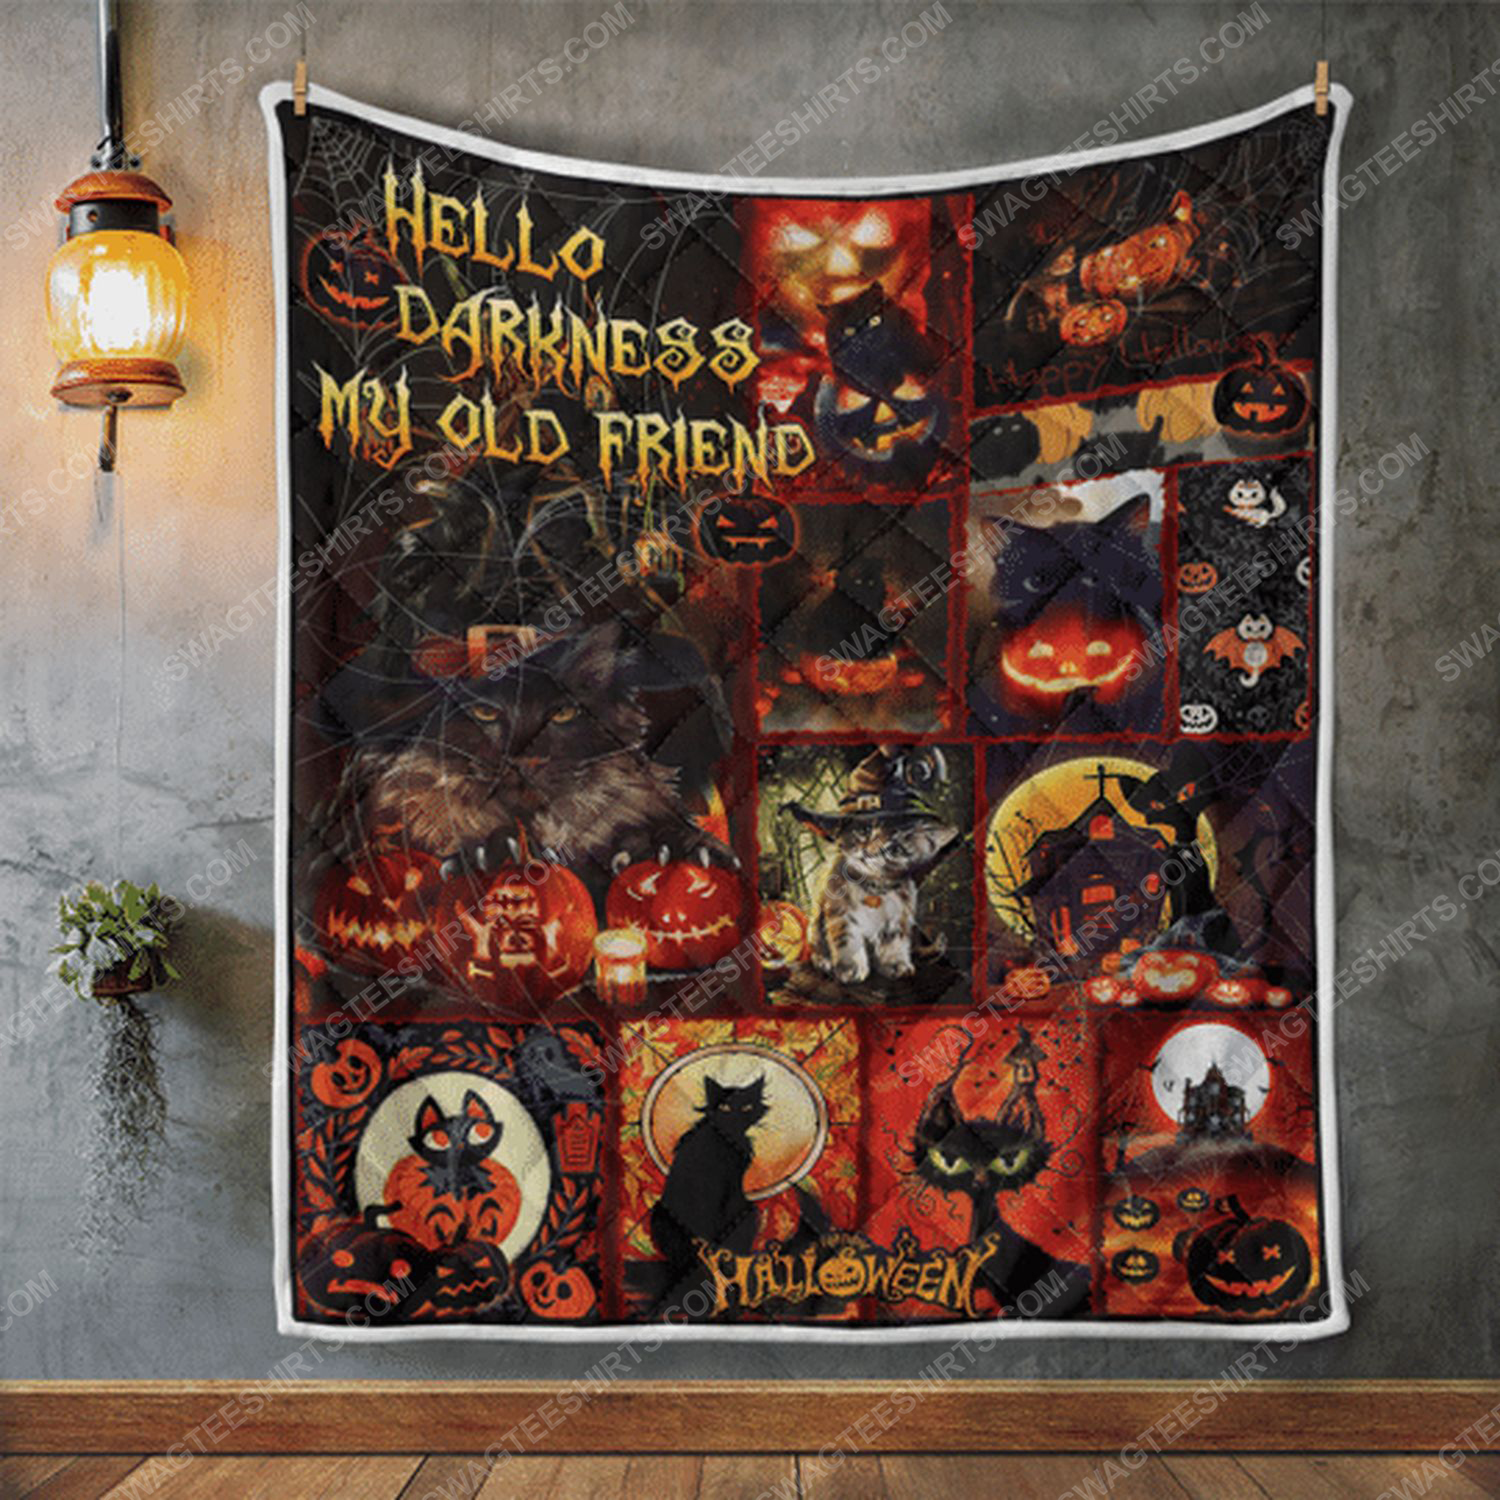 Hello darkness black cat halloween blanket 3